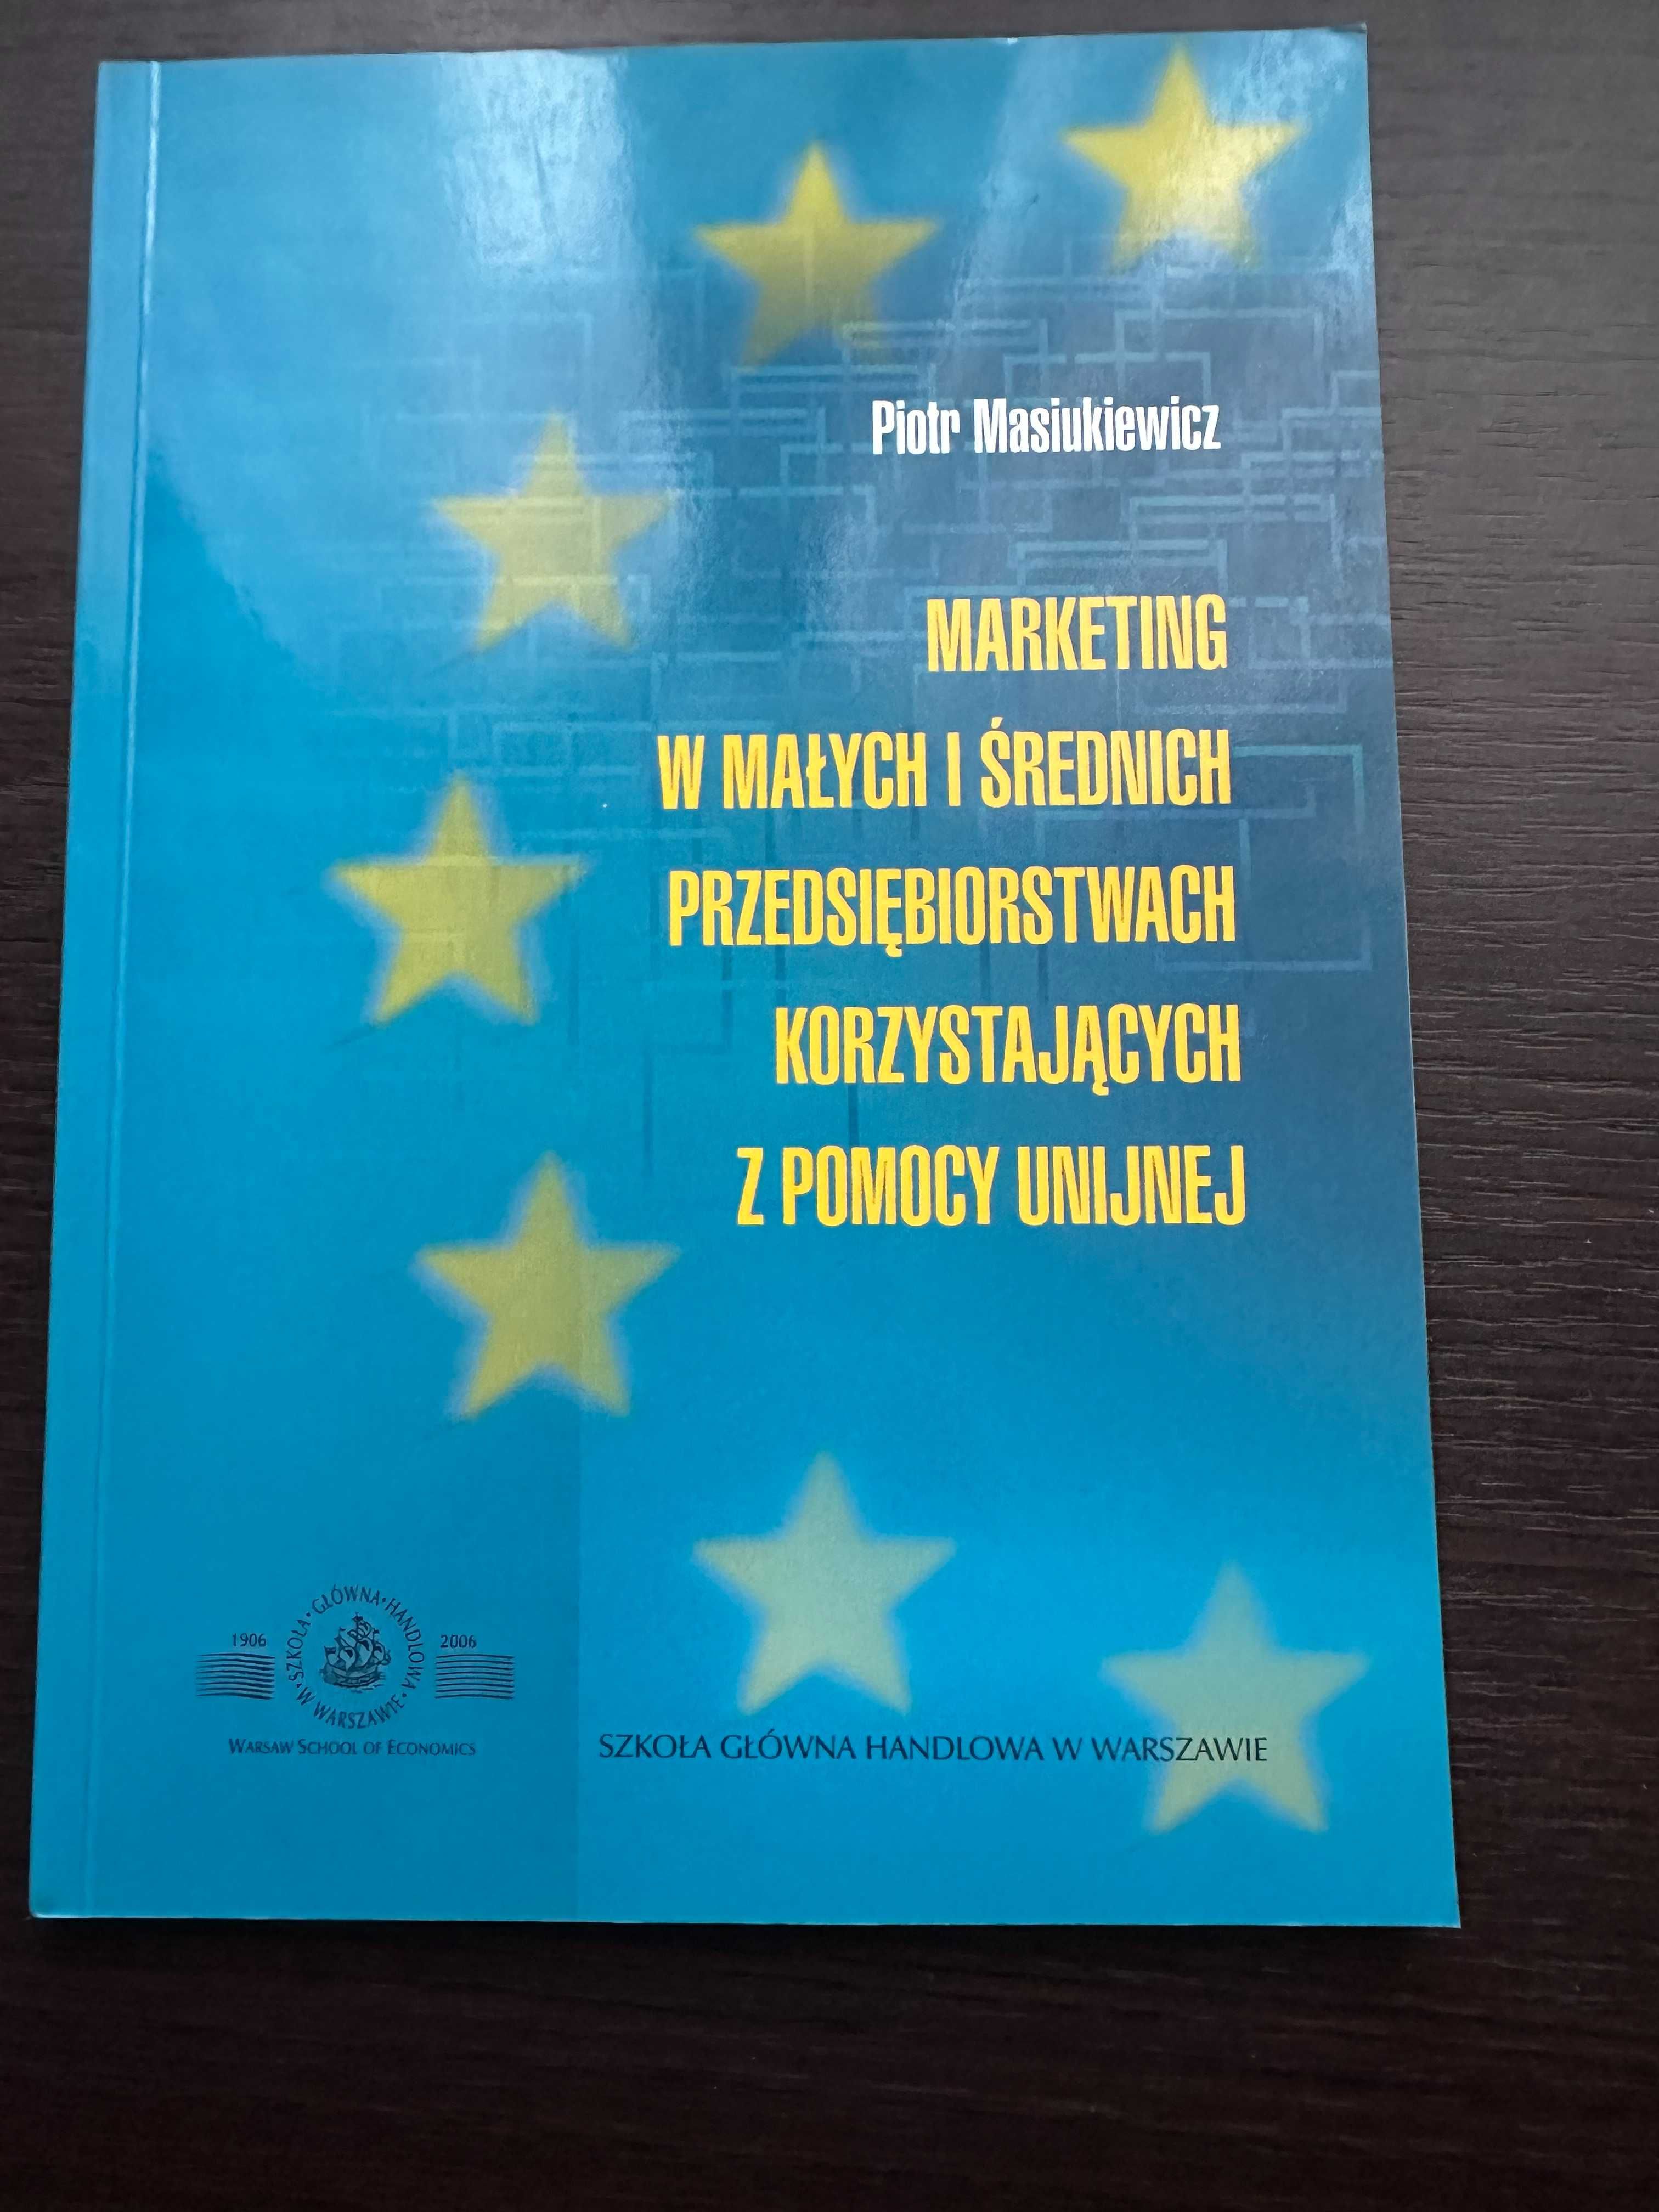 Marketing w małych i średnich przeds. P.Masiukiewicz 2007 r.